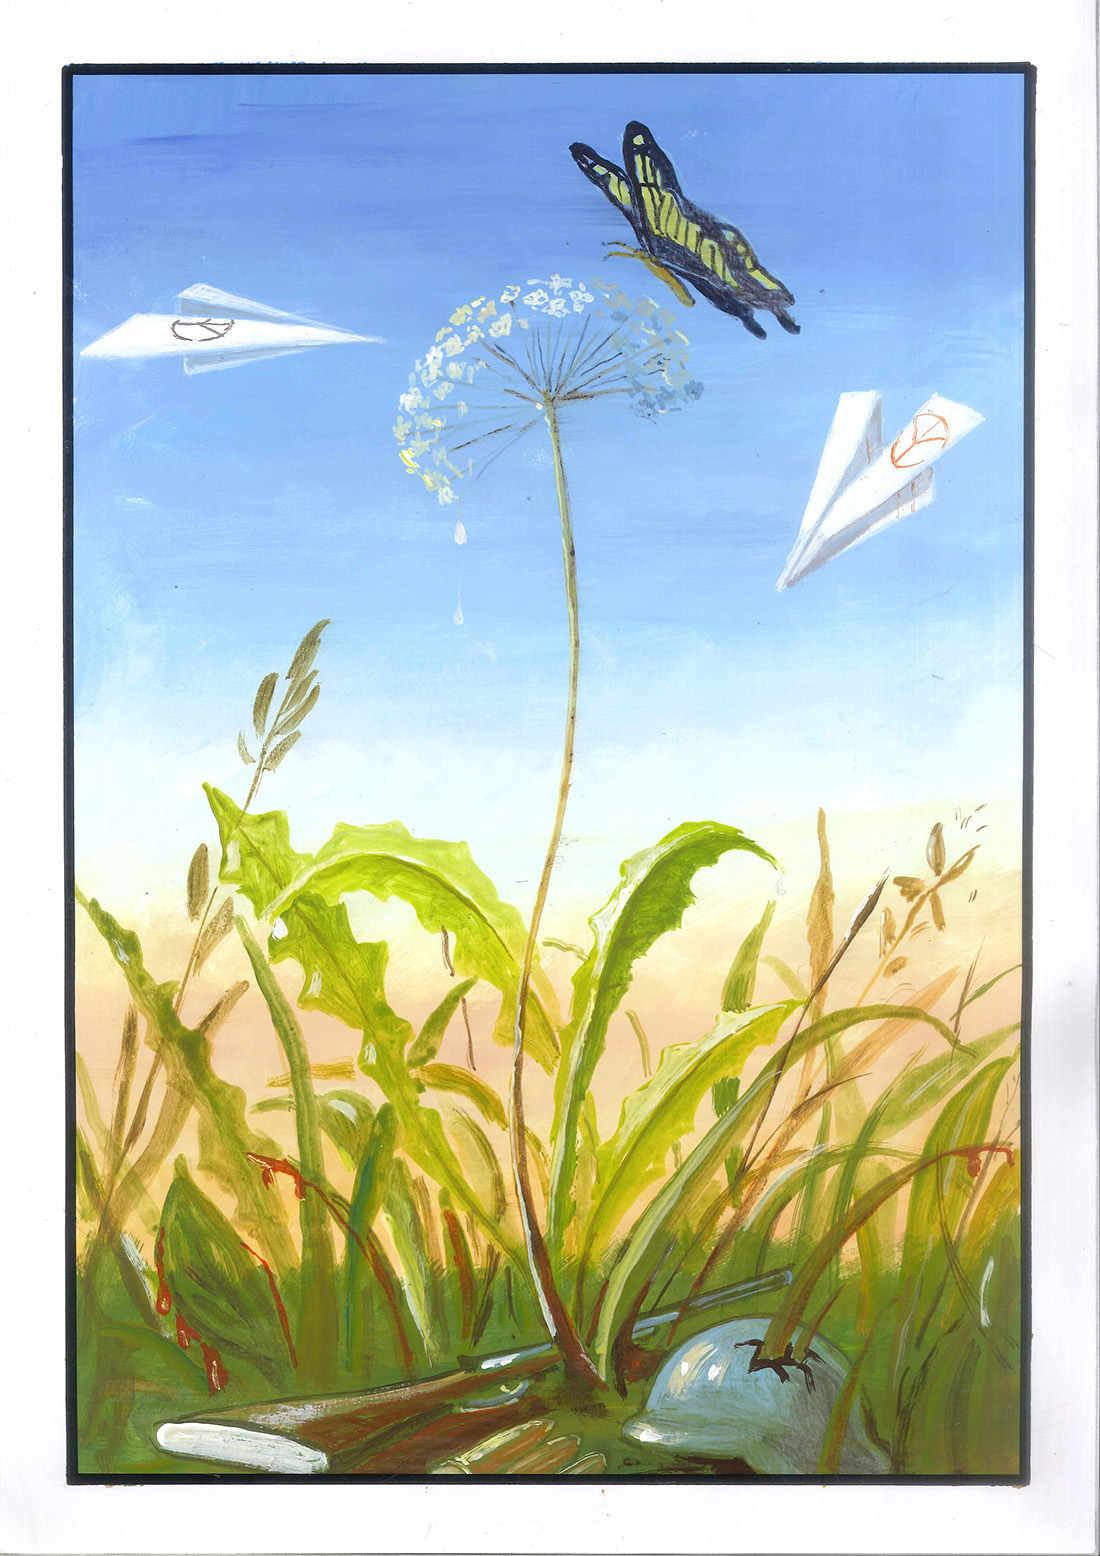 Opera per il draw not war di Muscas Nicolò: da un fucile e un elmetto nascono piante e fiori, su cui si posa una farfalla e due aeroplani di carta con il simbolo della pace volano attorno